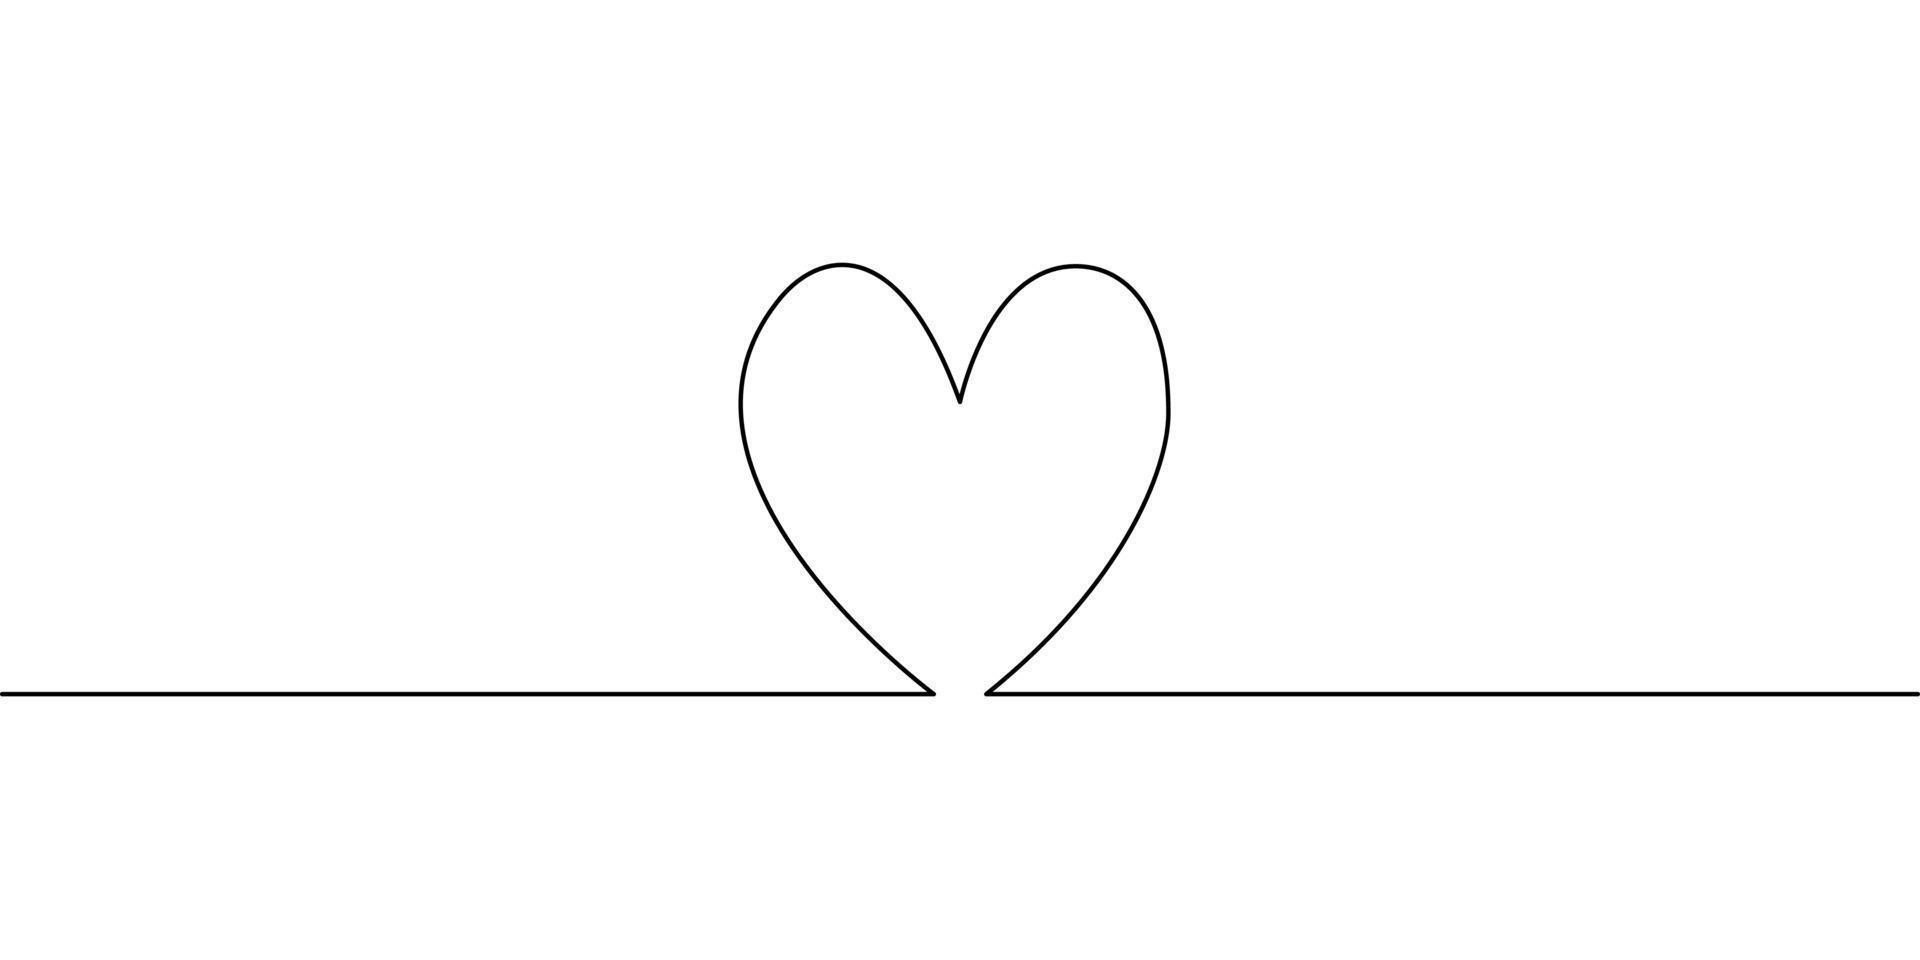 dessin au trait continu du coeur sur fond blanc. vecteur